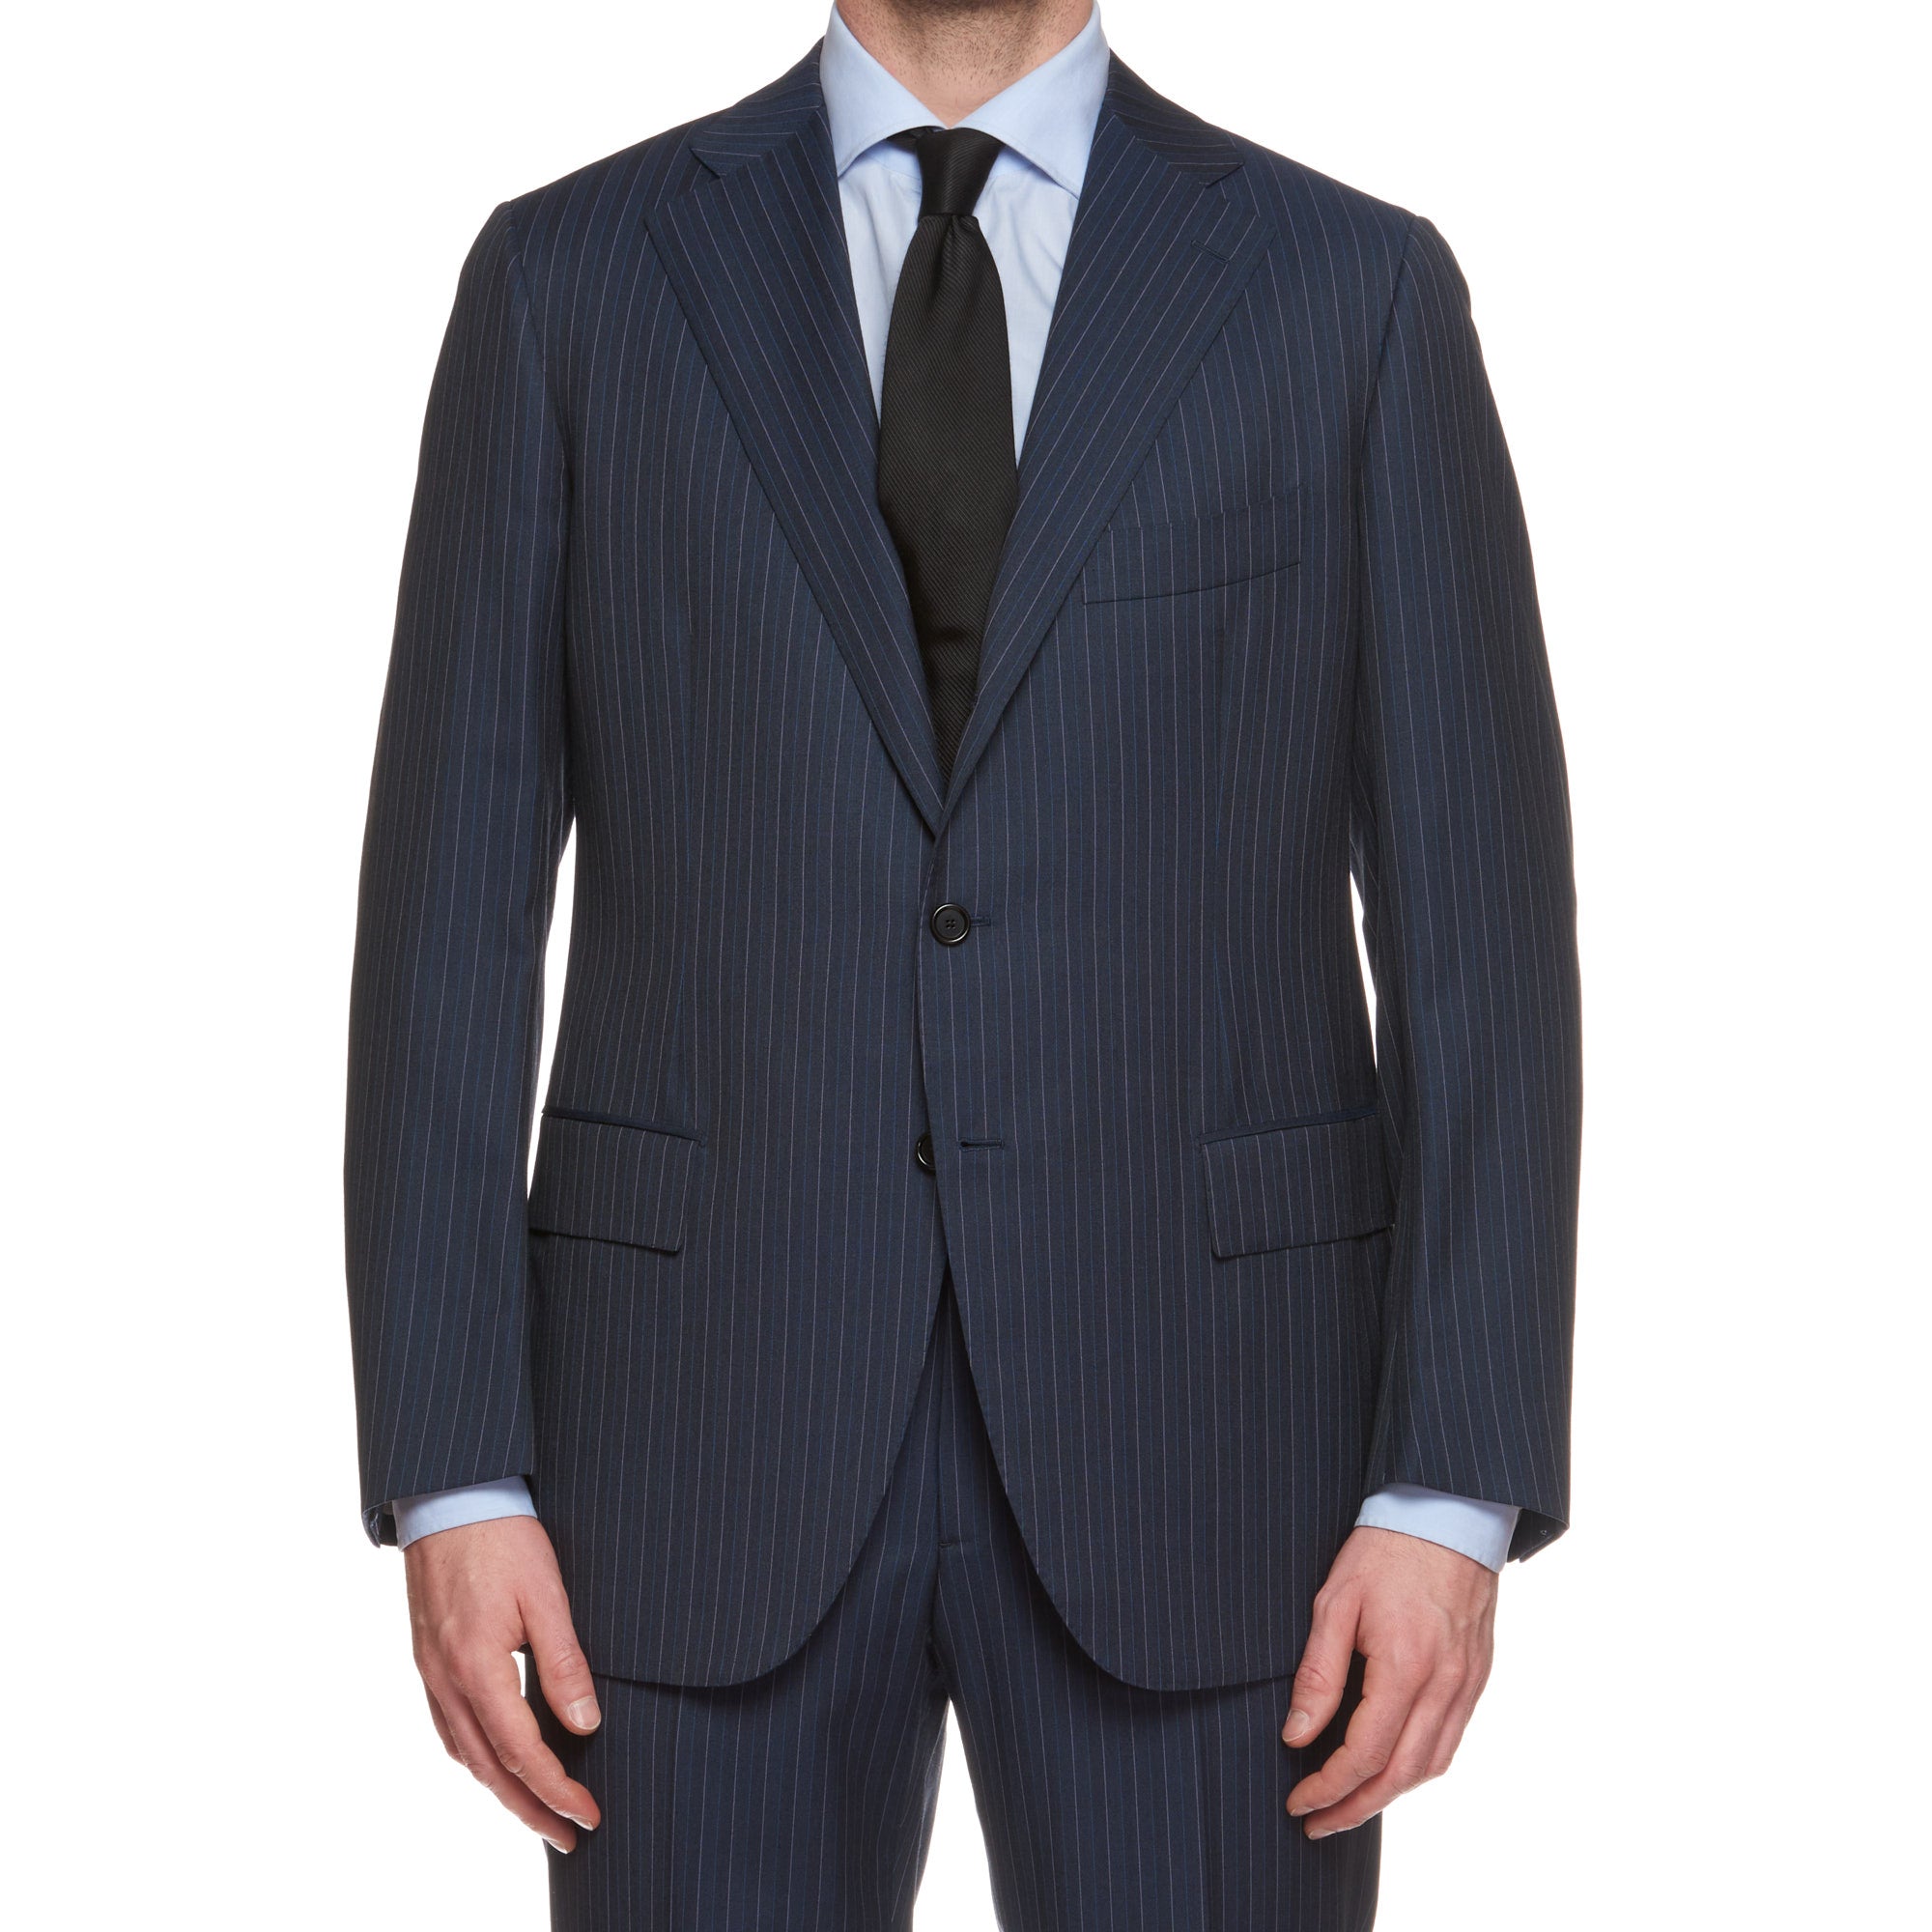 CESARE ATTOLINI Napoli Handmade Blue Striped Wool Suit EU 52 NEW US 42 CESARE ATTOLINI